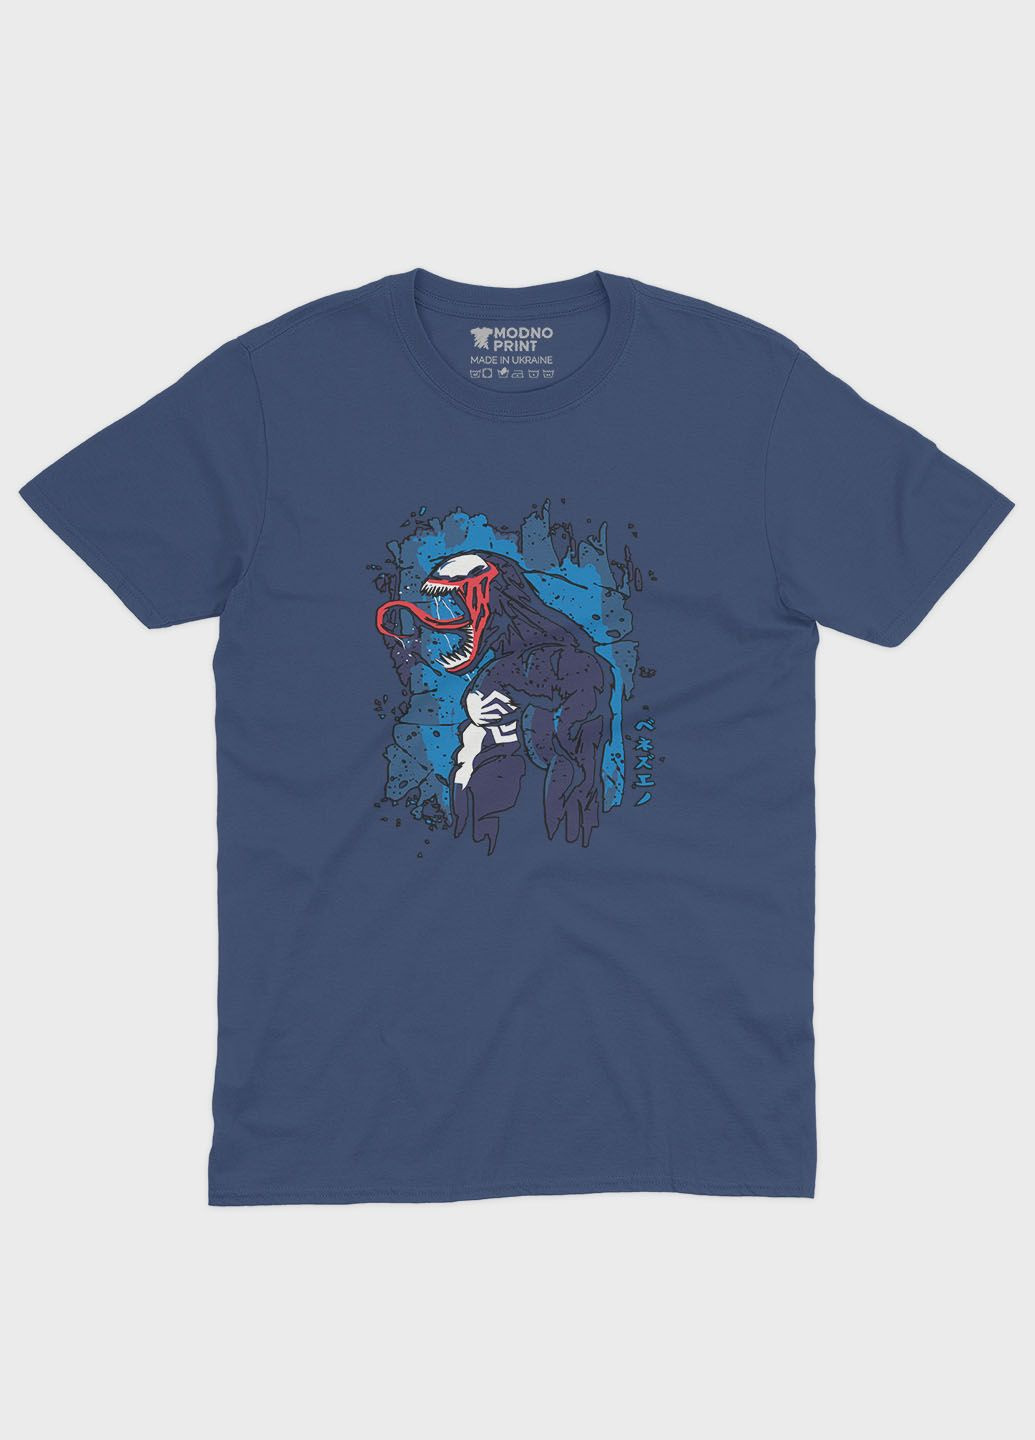 Темно-синя демісезонна футболка для хлопчика з принтом суперзлодія - веном (ts001-1-nav-006-013-014-b) Modno